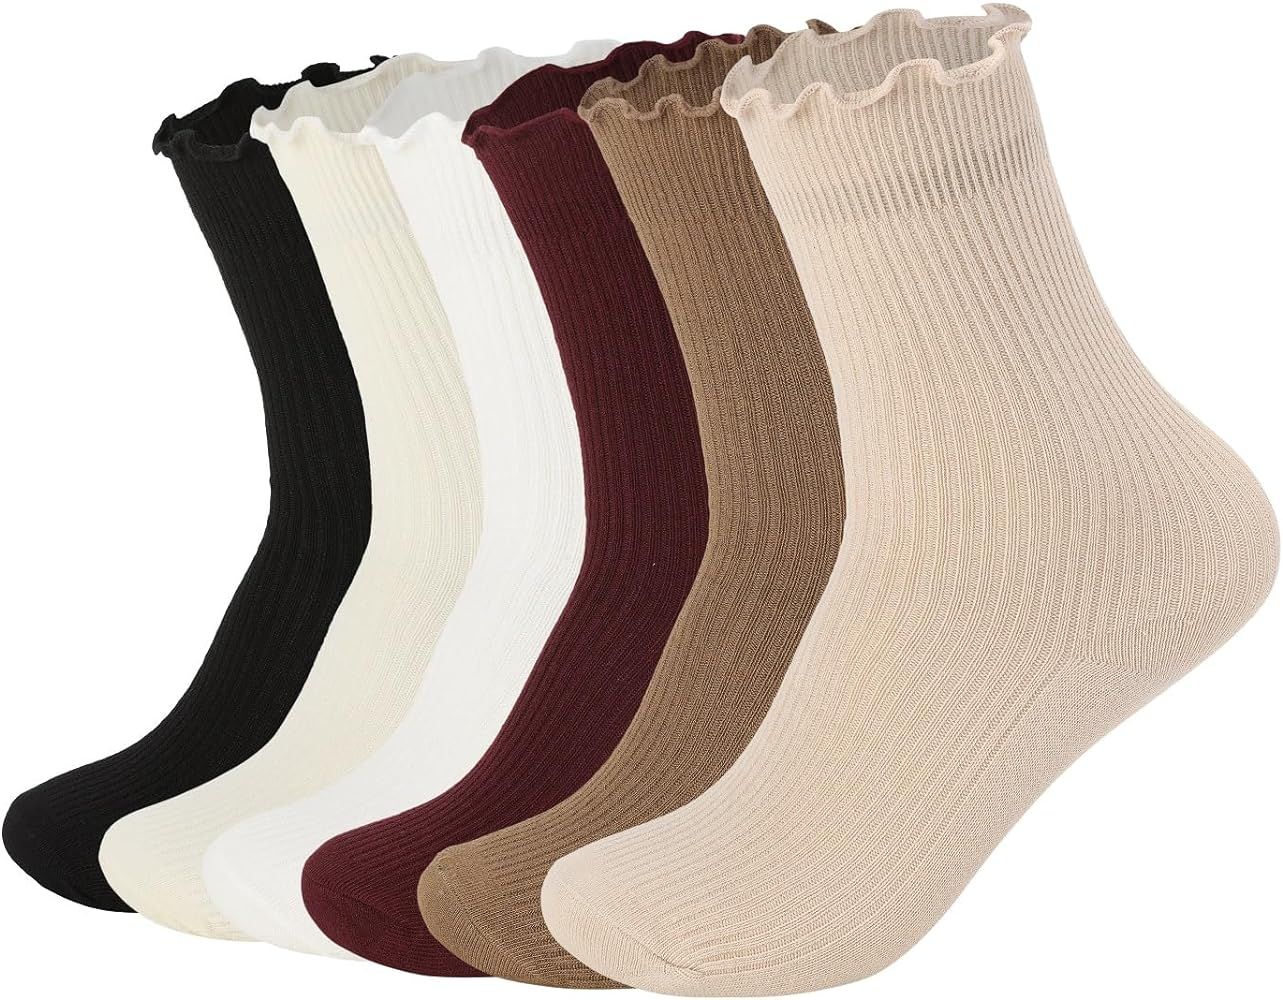 FLYDO Ruffle Socks Women Cotton Socks Cute White Socks for Women Girls Lettuce Edge Socks Women F... | Amazon (US)